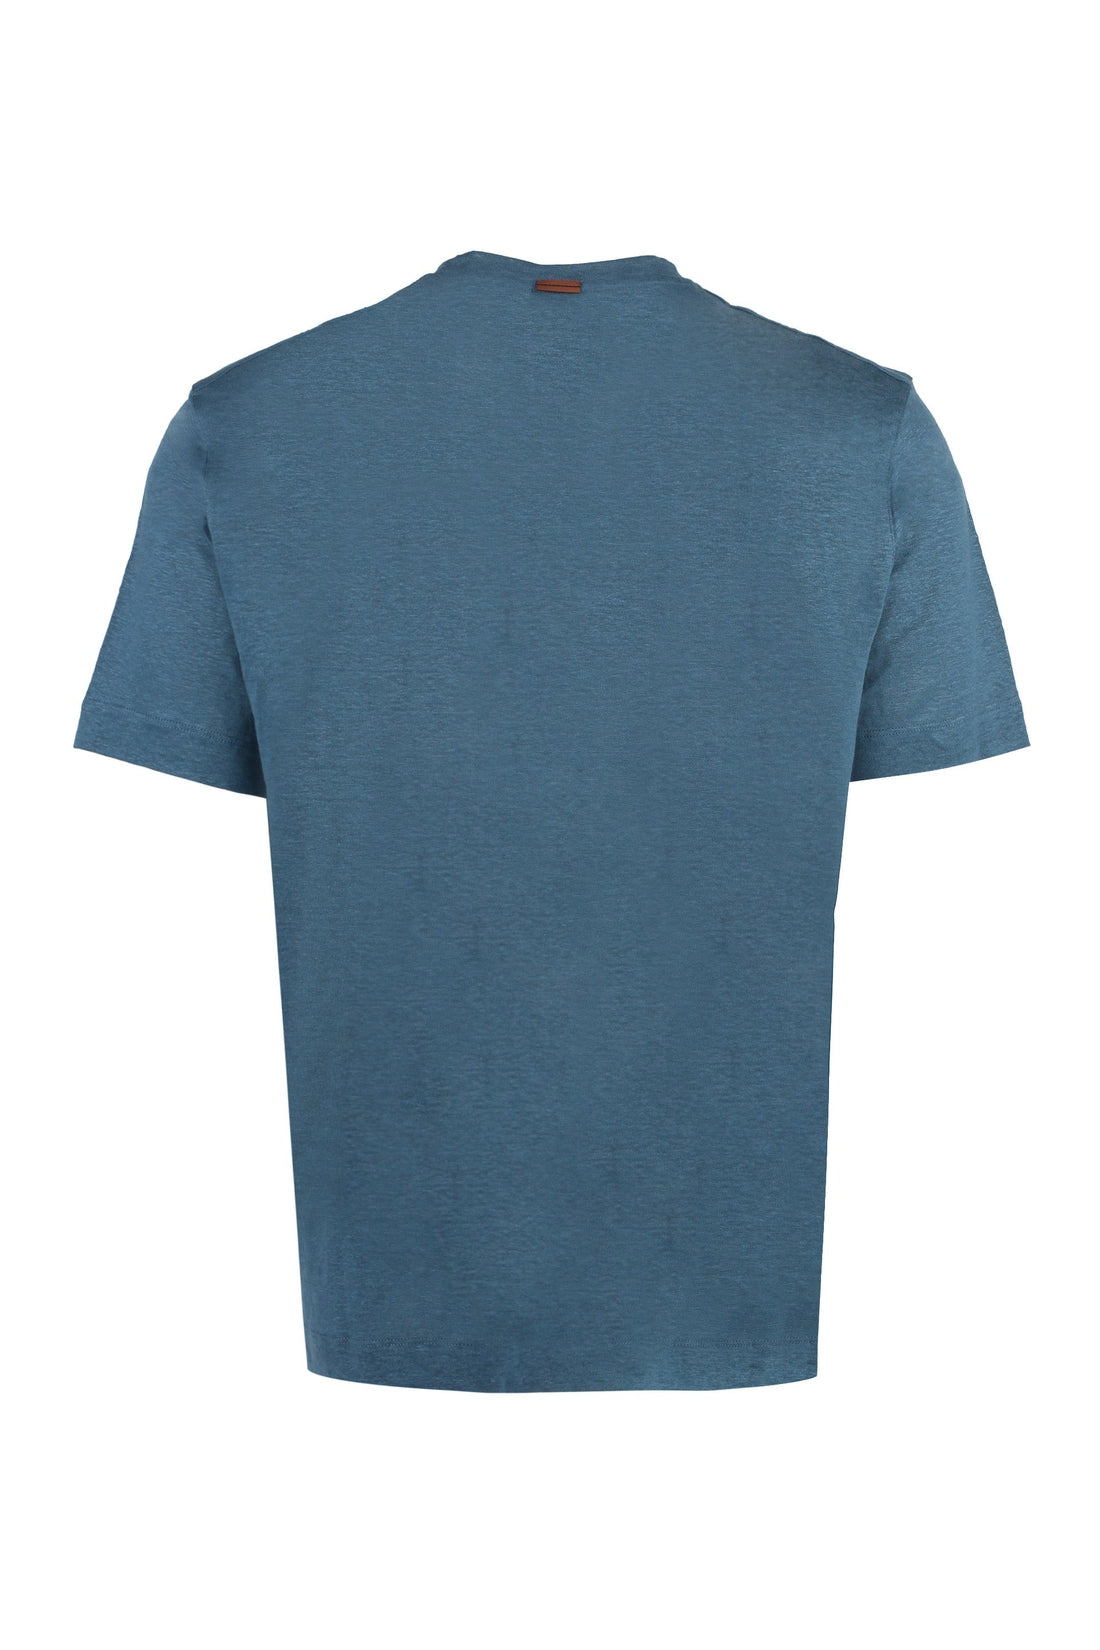 Zegna-OUTLET-SALE-Linen t-shirt-ARCHIVIST